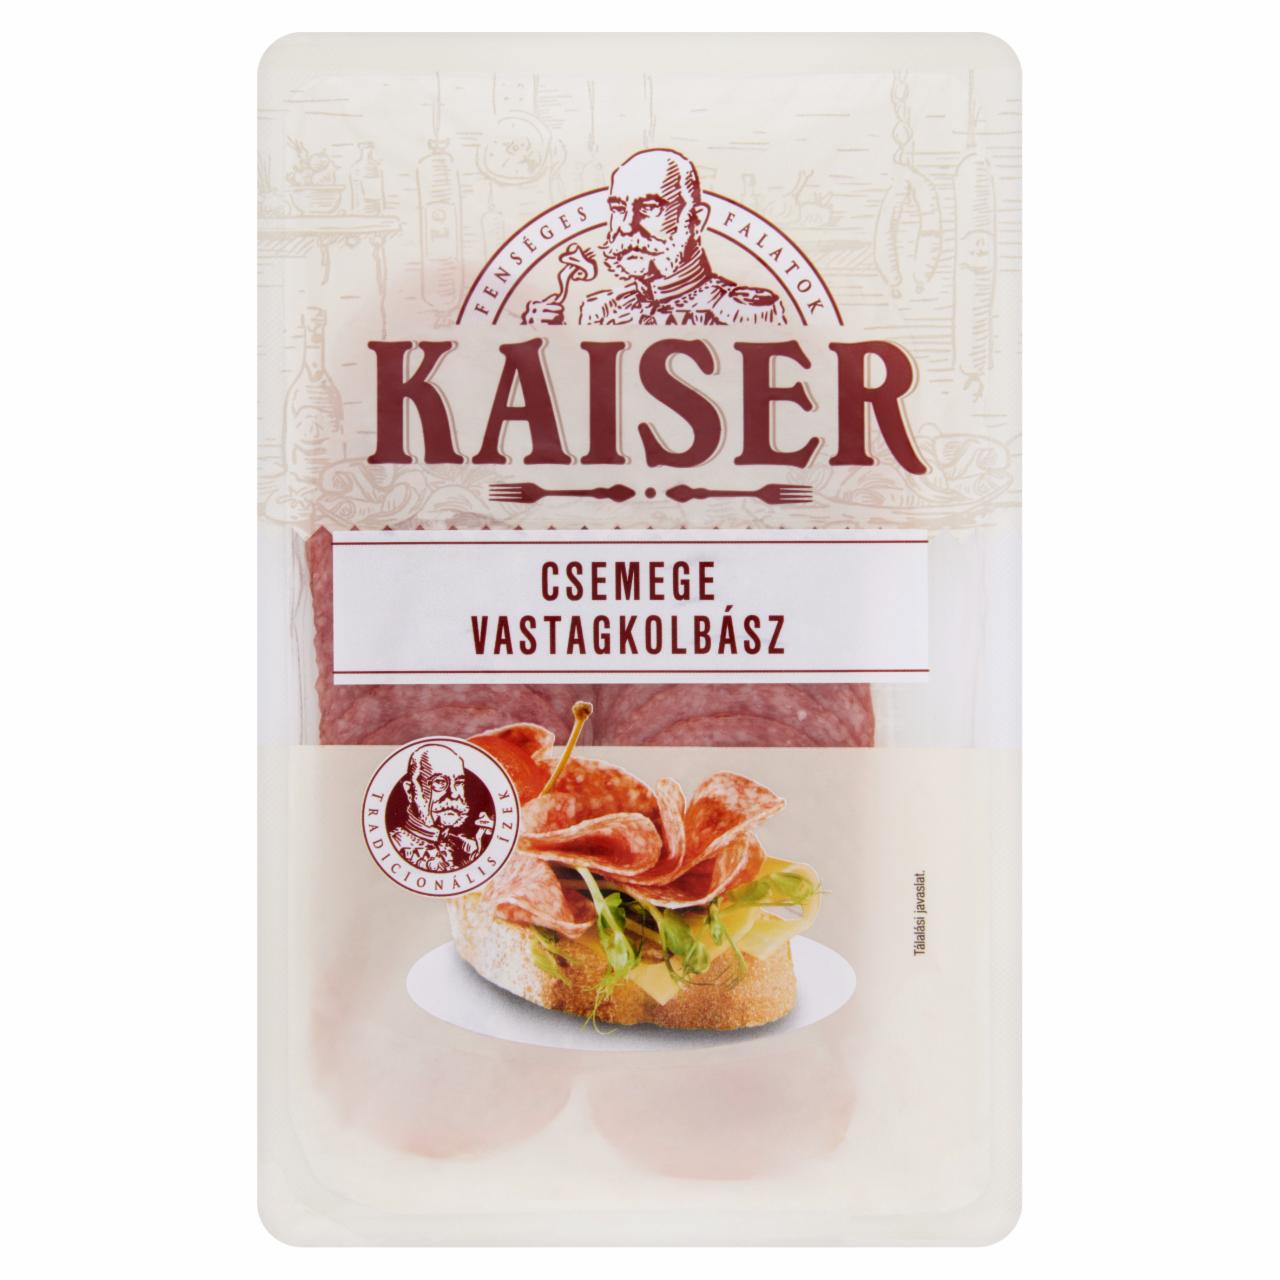 Képek - Kaiser szeletelt csemege vastagkolbász 75 g